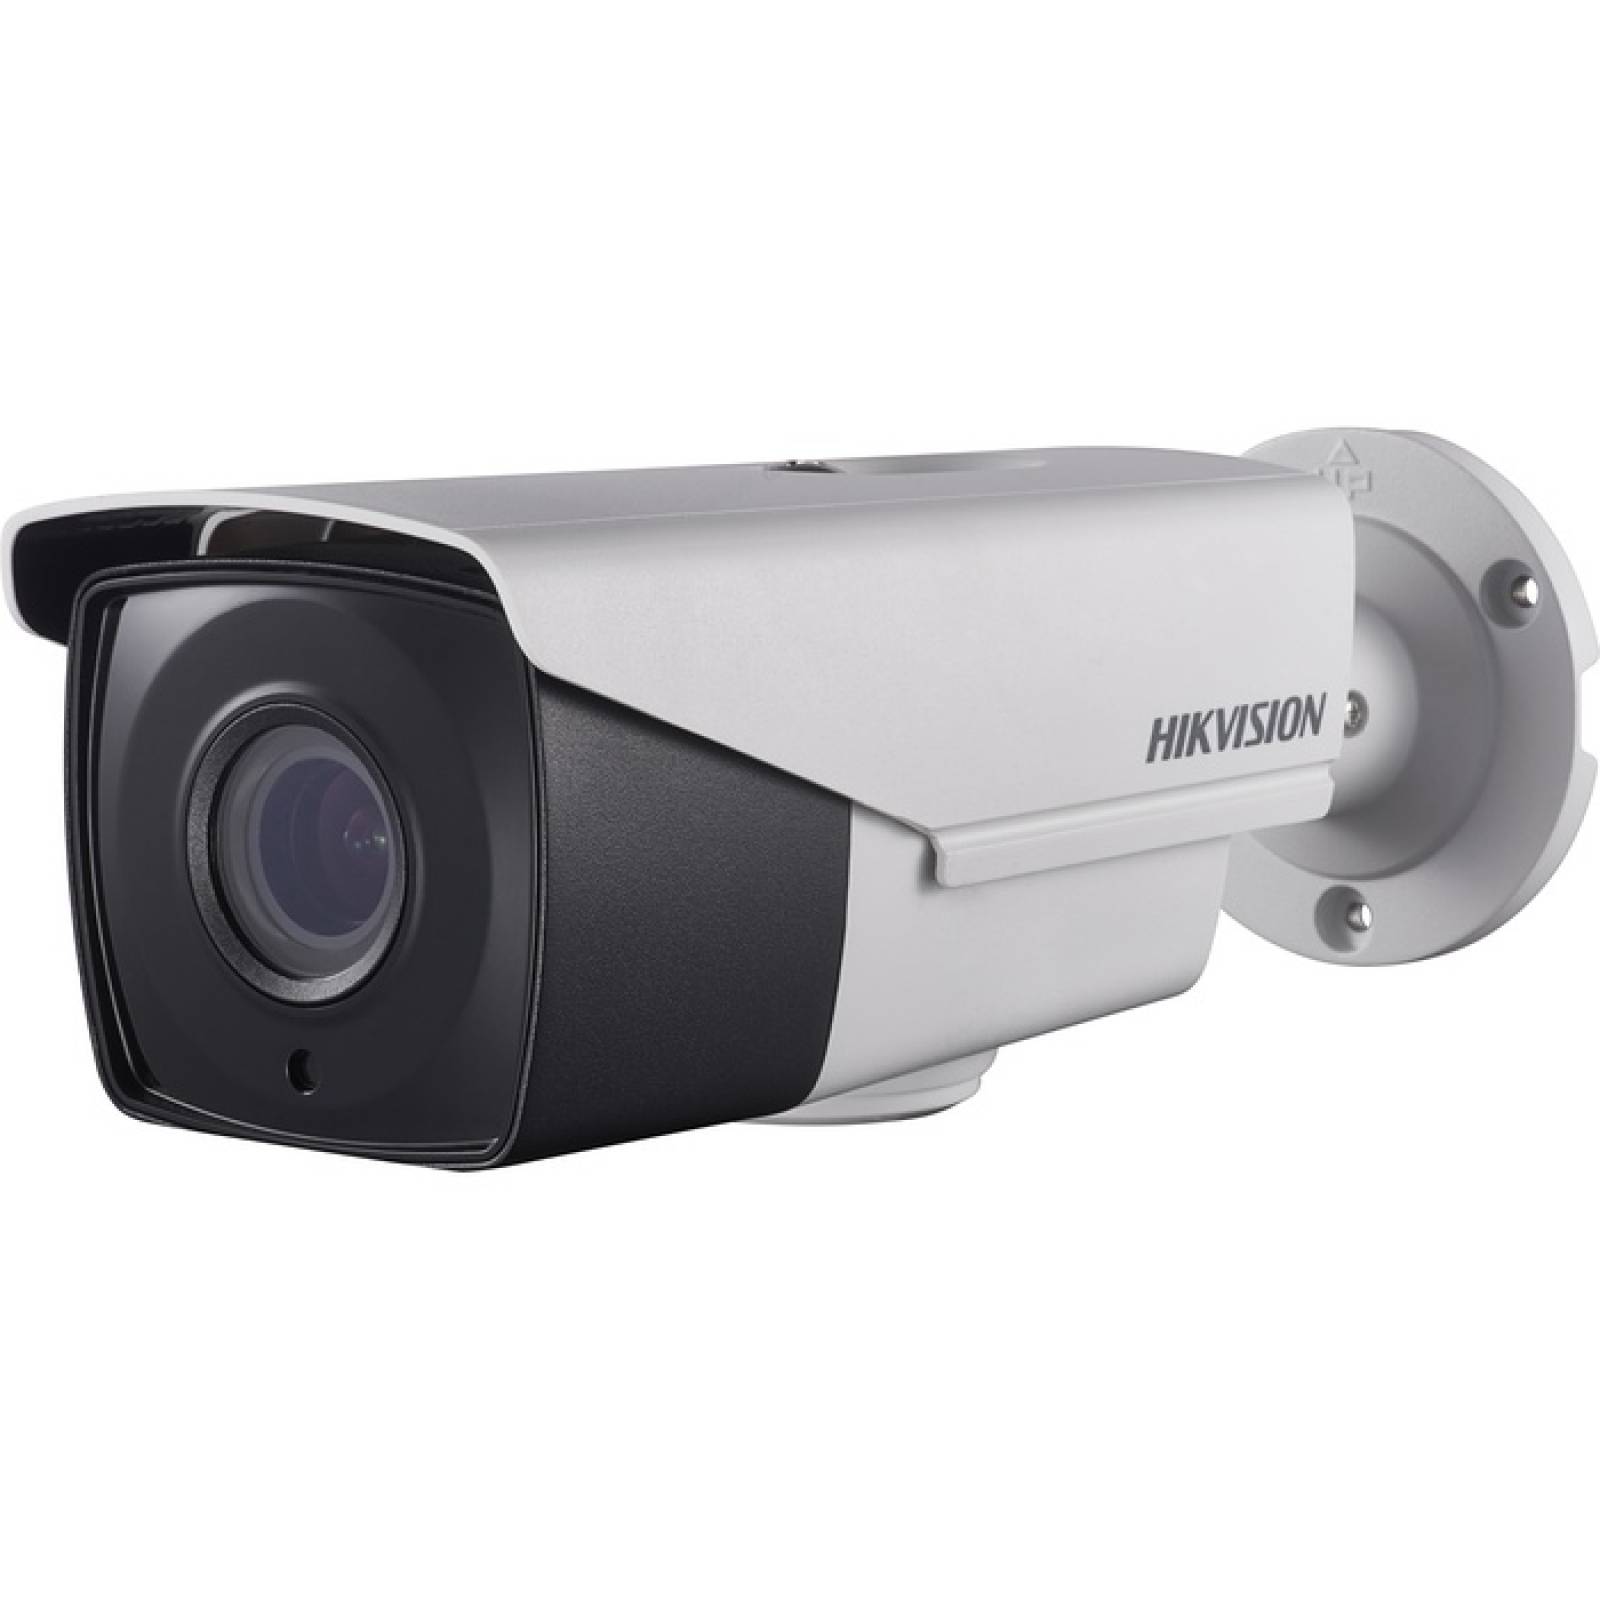 Hikvision Turbo HD DS2CE16D7T(A)IT3Z 2 Megapixel Surveillance Camera  Color Monochrome